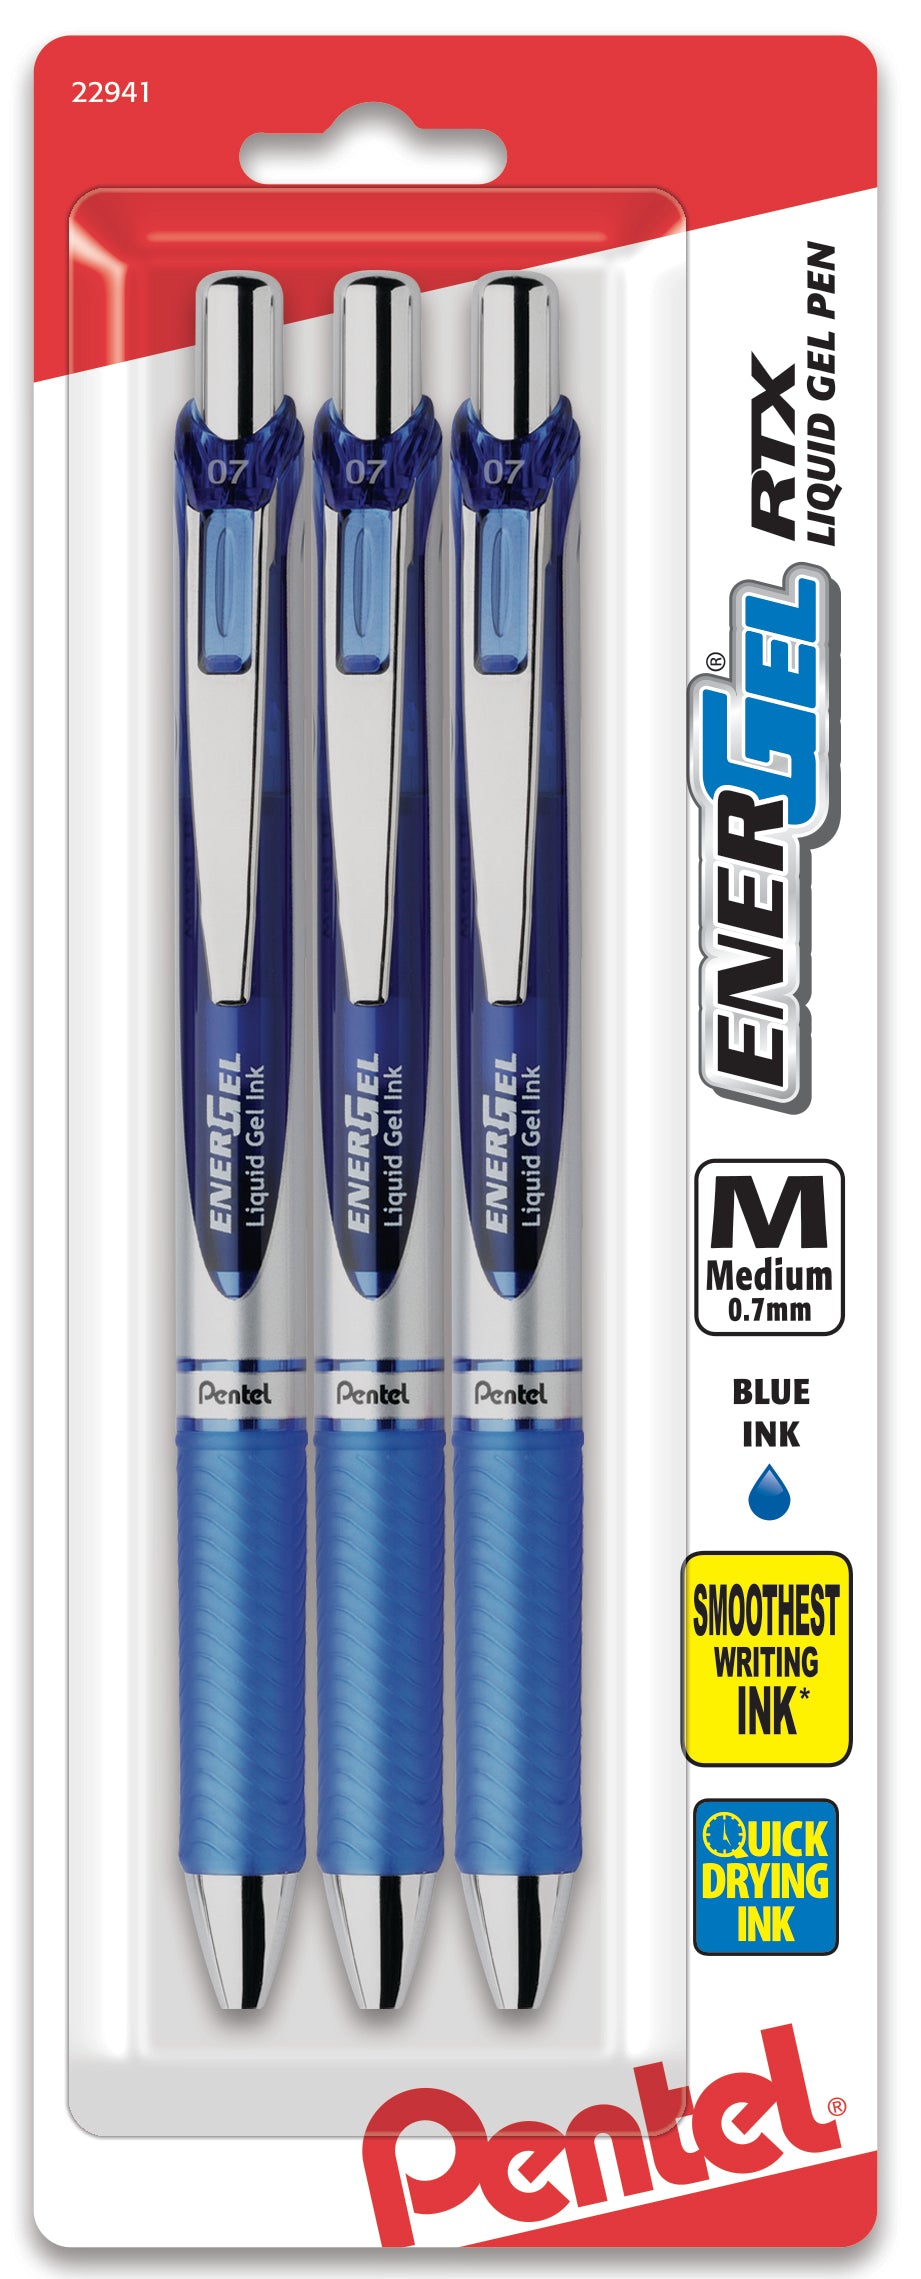 Combo 5 Pack - 2 Brush Tip & 3 Ultra Fine Tip Pens